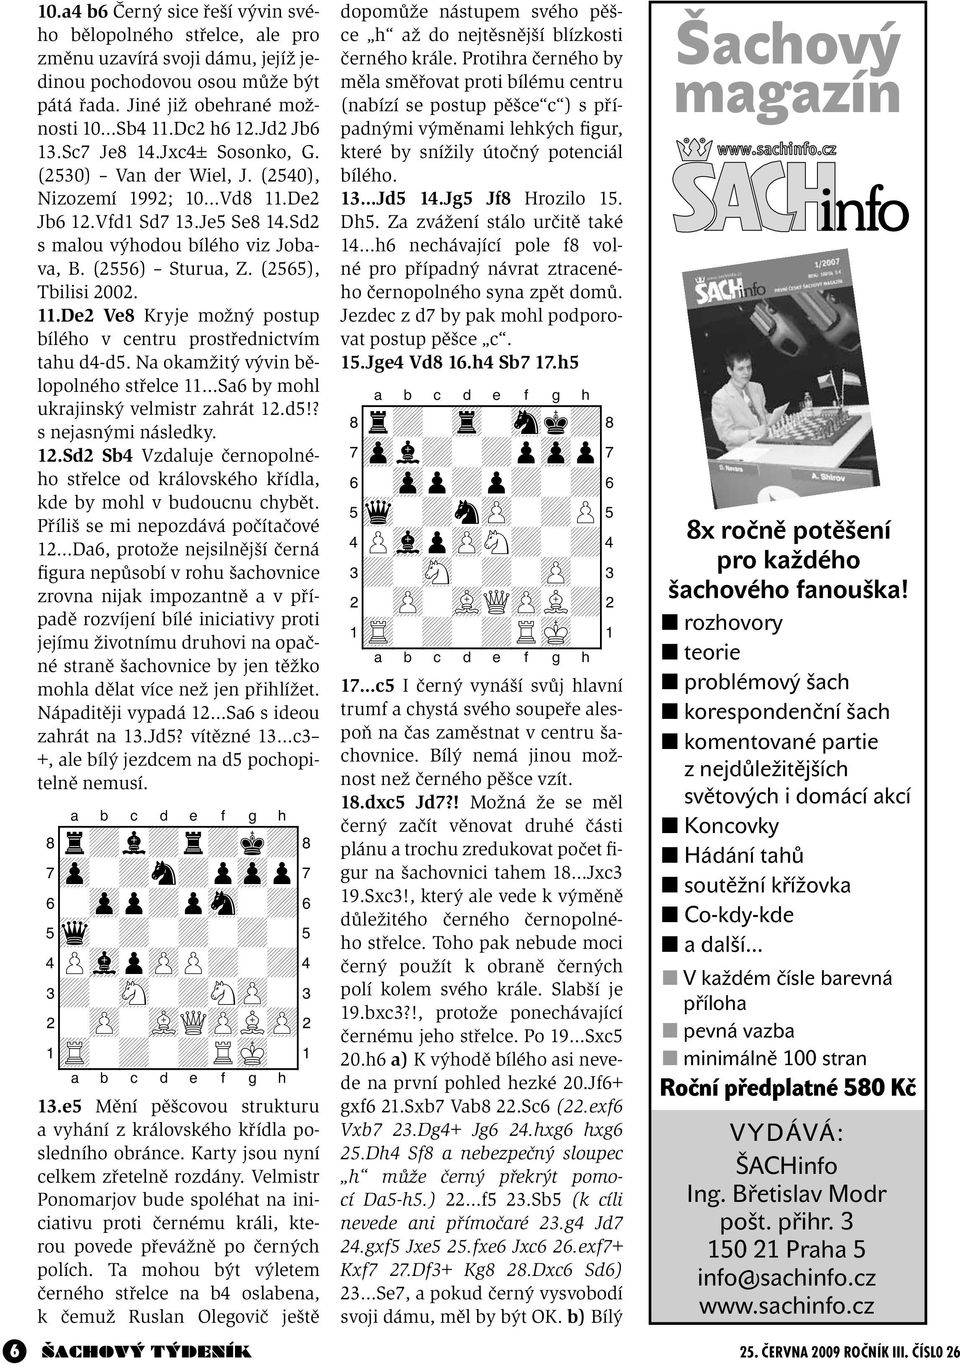 (2565), Tbilisi 2002. 11.De2 Ve8 Kryje možný postup bílého v centru prostřednictvím tahu d4-d5. Na okamžitý vývin bělopolného střelce 11 Sa6 by mohl ukrajinský velmistr zahrát 12.d5!? s nejasnými následky.